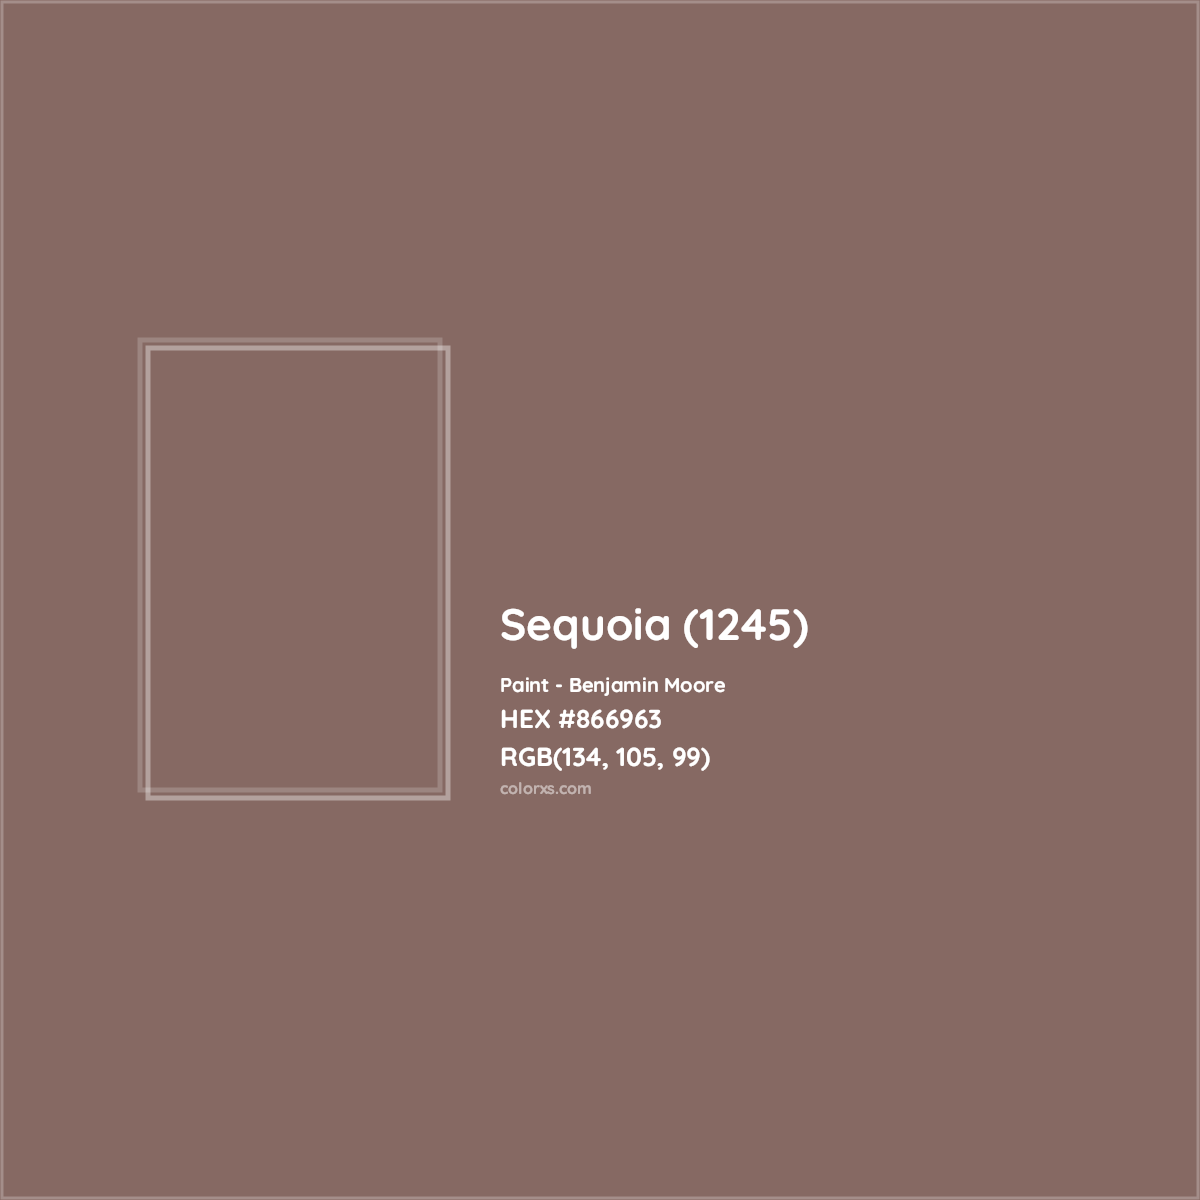 HEX #866963 Sequoia (1245) Paint Benjamin Moore - Color Code